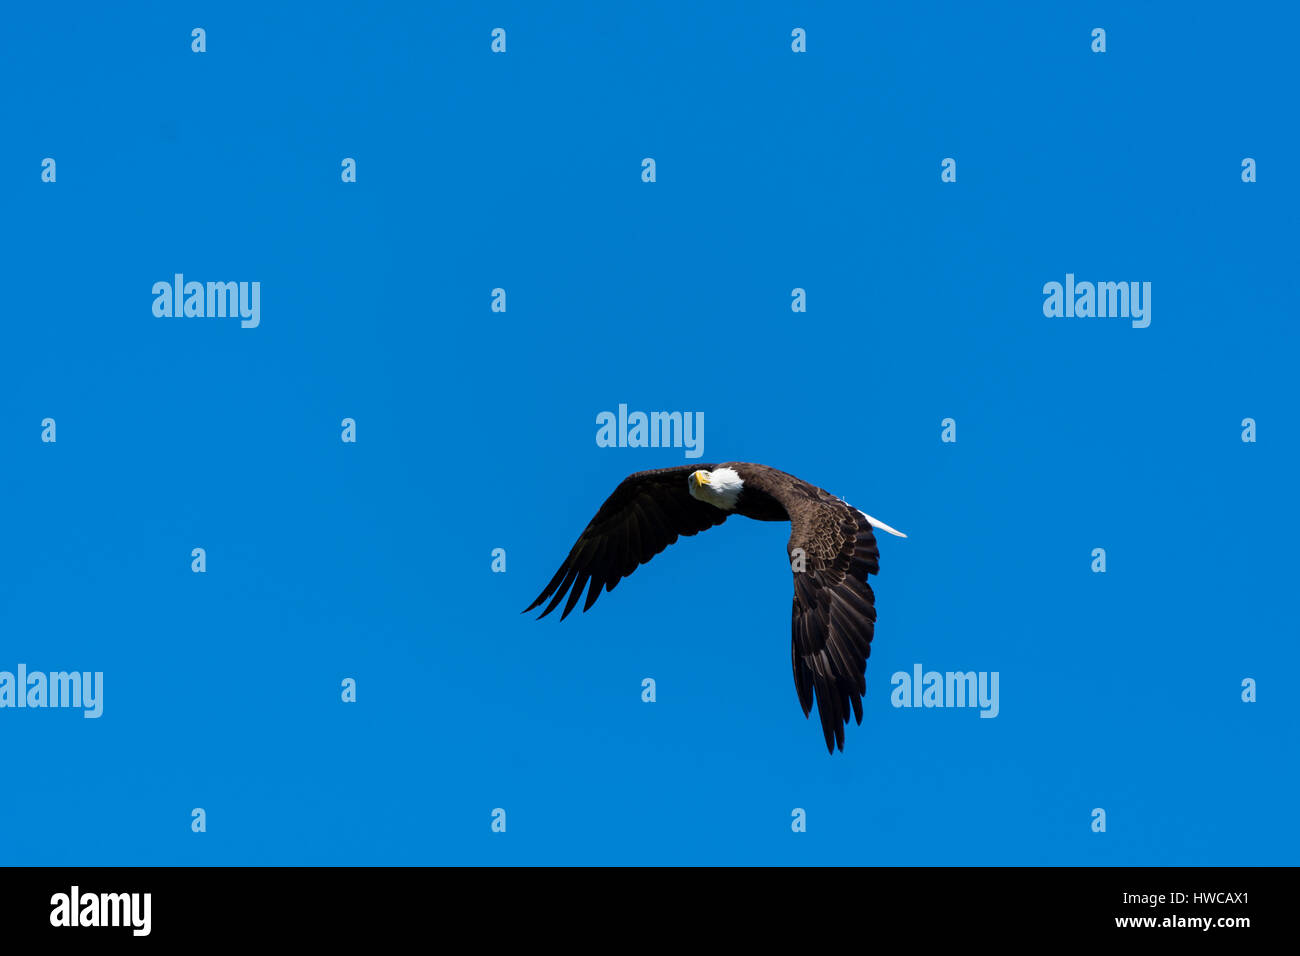 A bald eagle (Haliaeetus leucocephalus) soars against a clear blue sky. Stock Photo